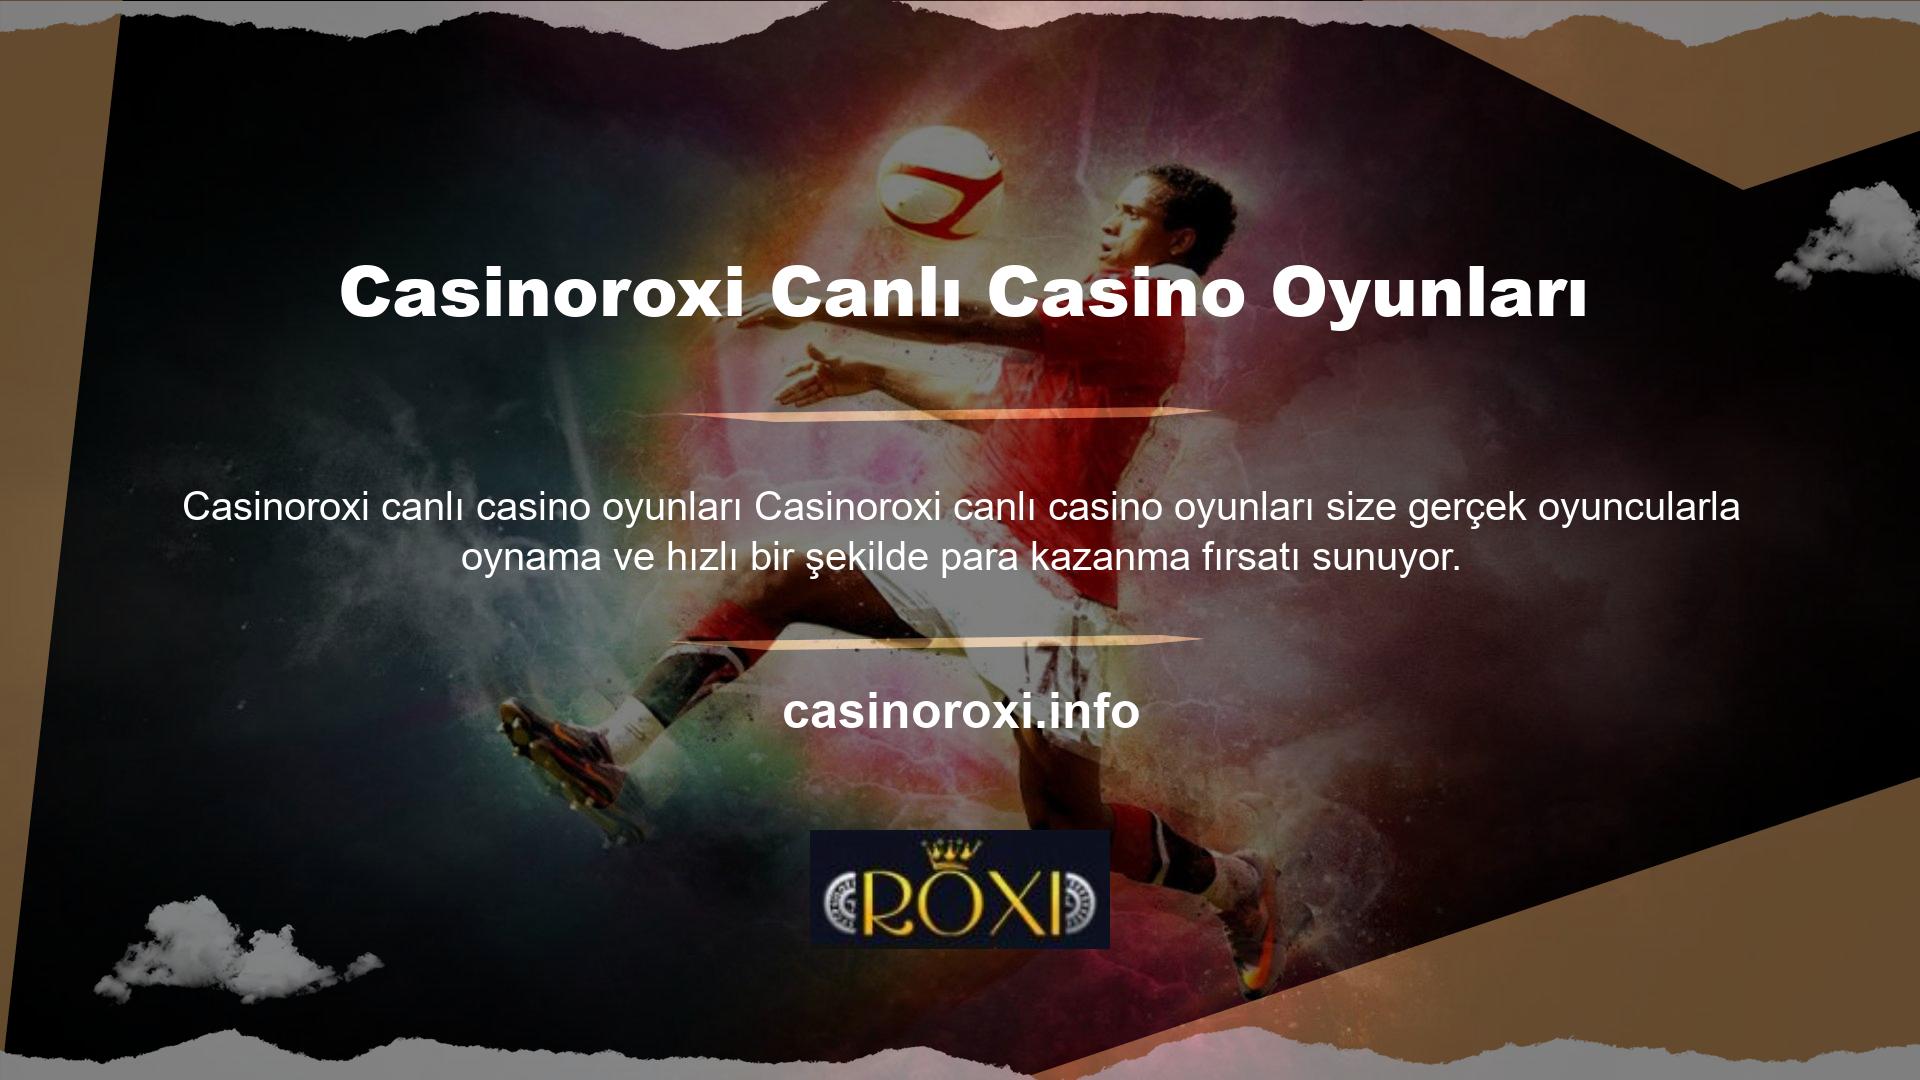 Gerçek casinoya en yakın olan Casinoroxi canlı casino kategorisine yatırım yaparak bonuslardan da yararlanabilirsiniz